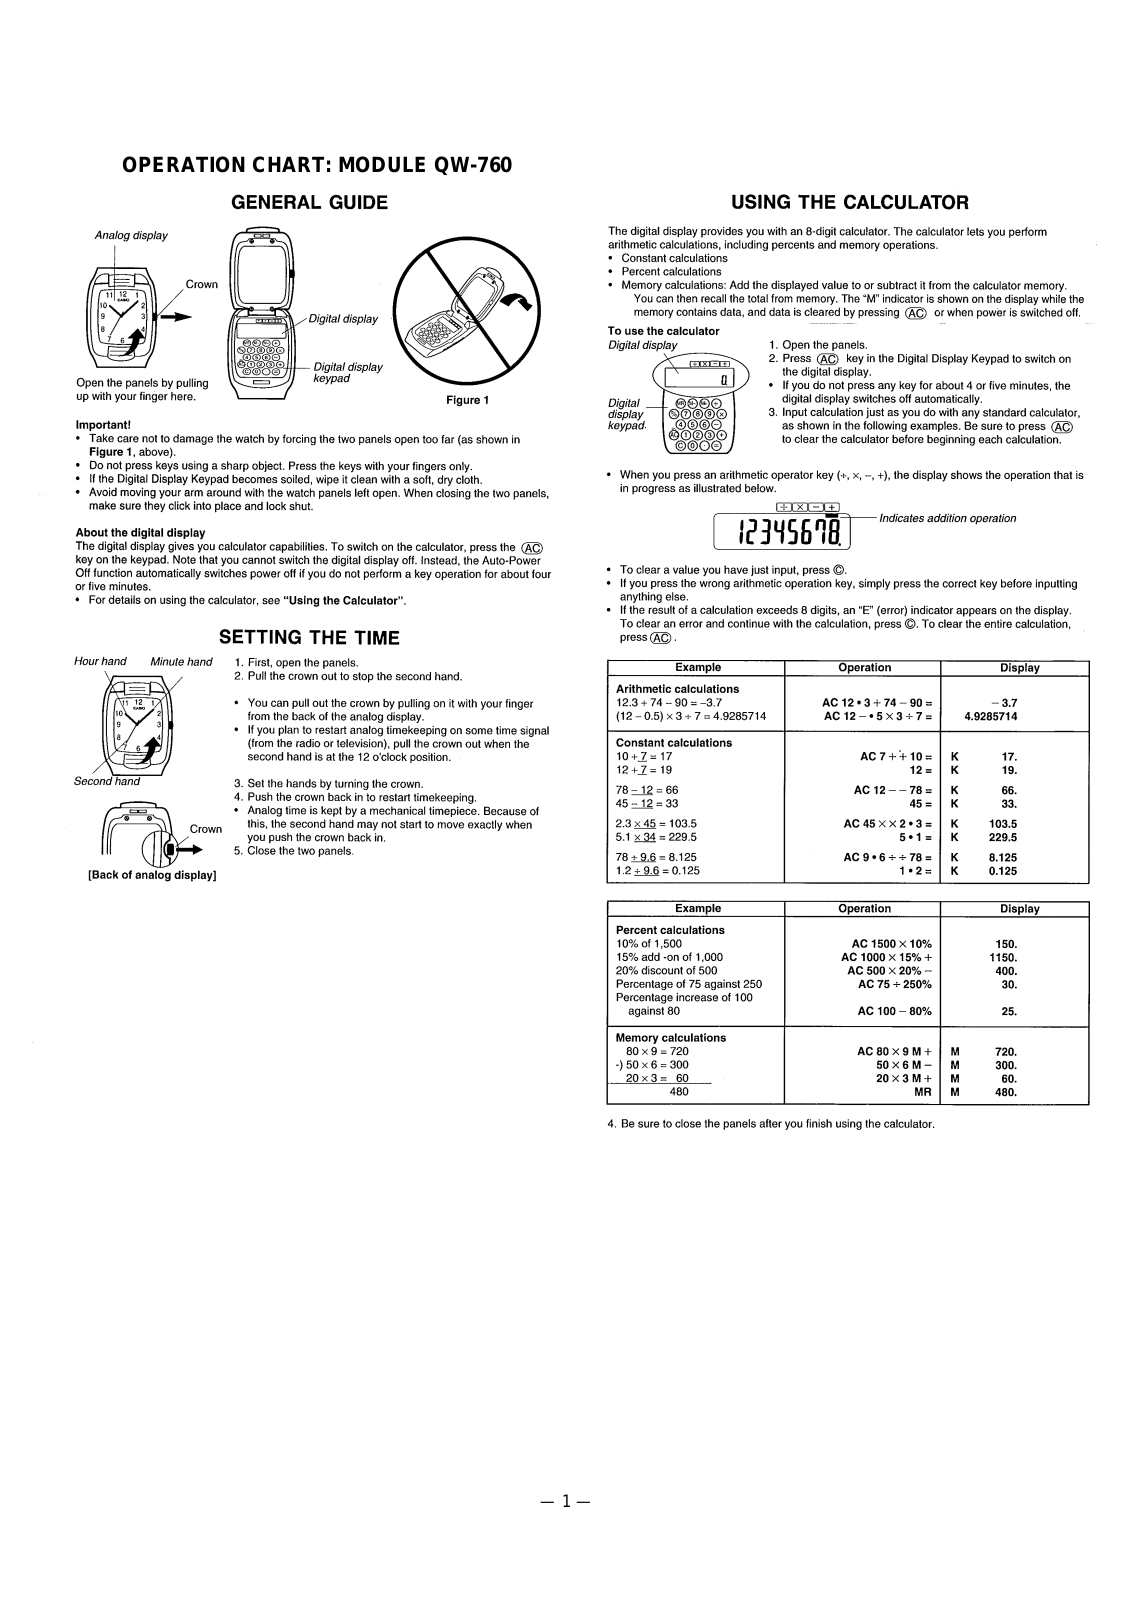 Casio 760 Owner's Manual